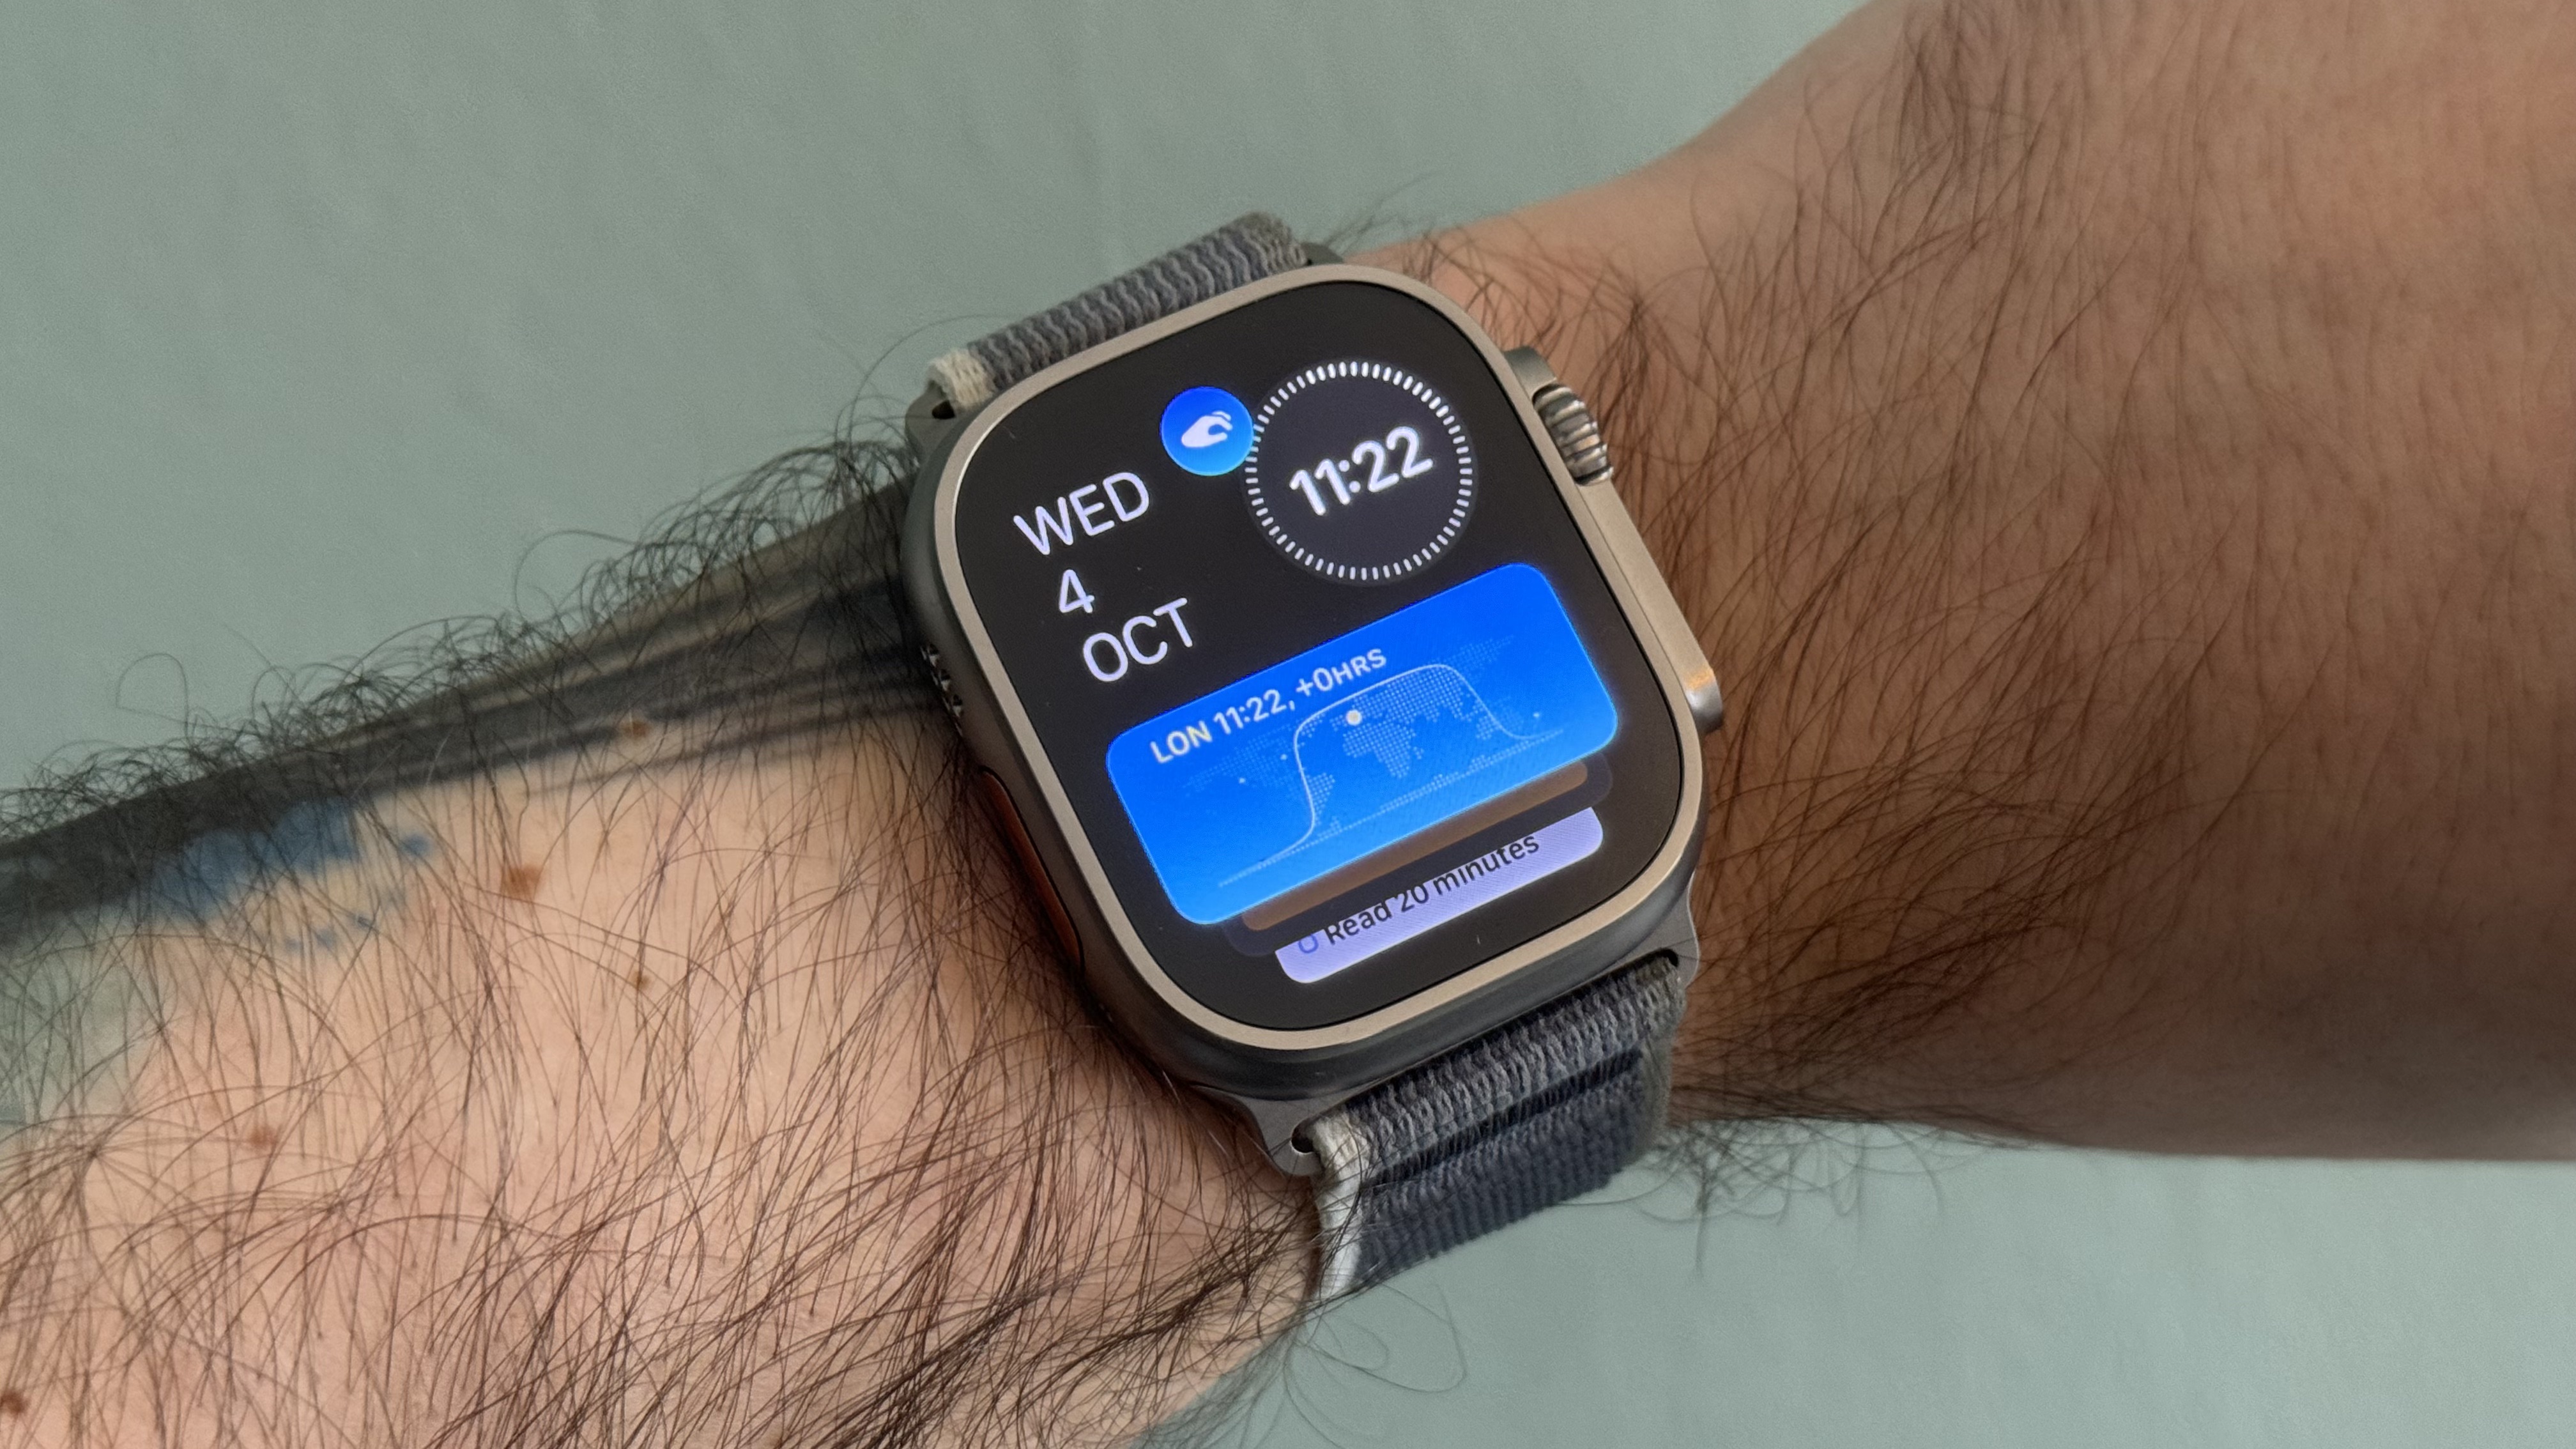 Double Tap on Apple Watch Ultra 2